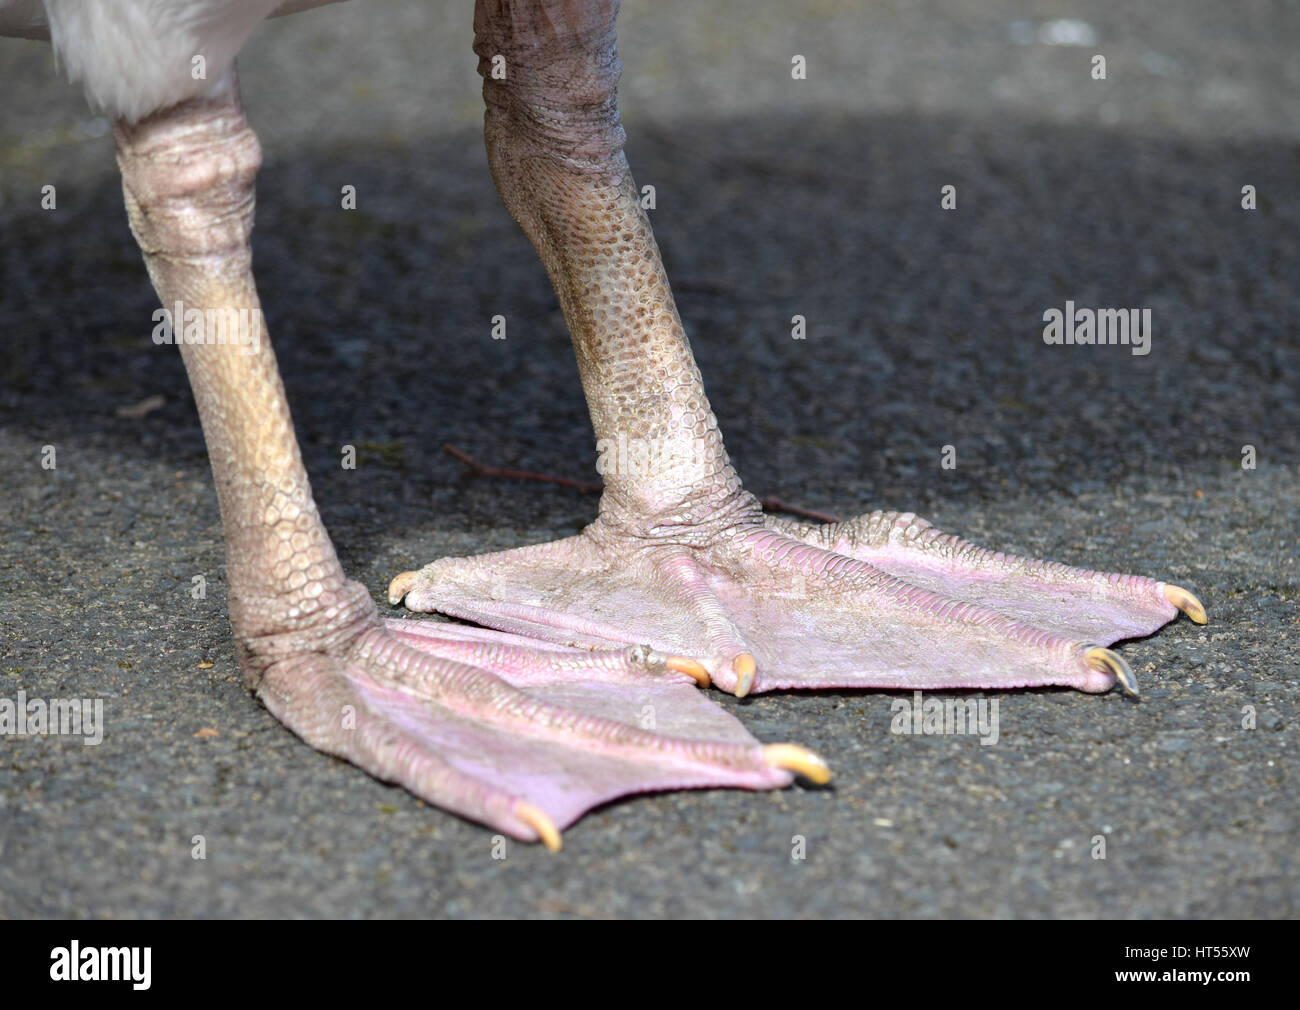 Pelican feet Stock Photo